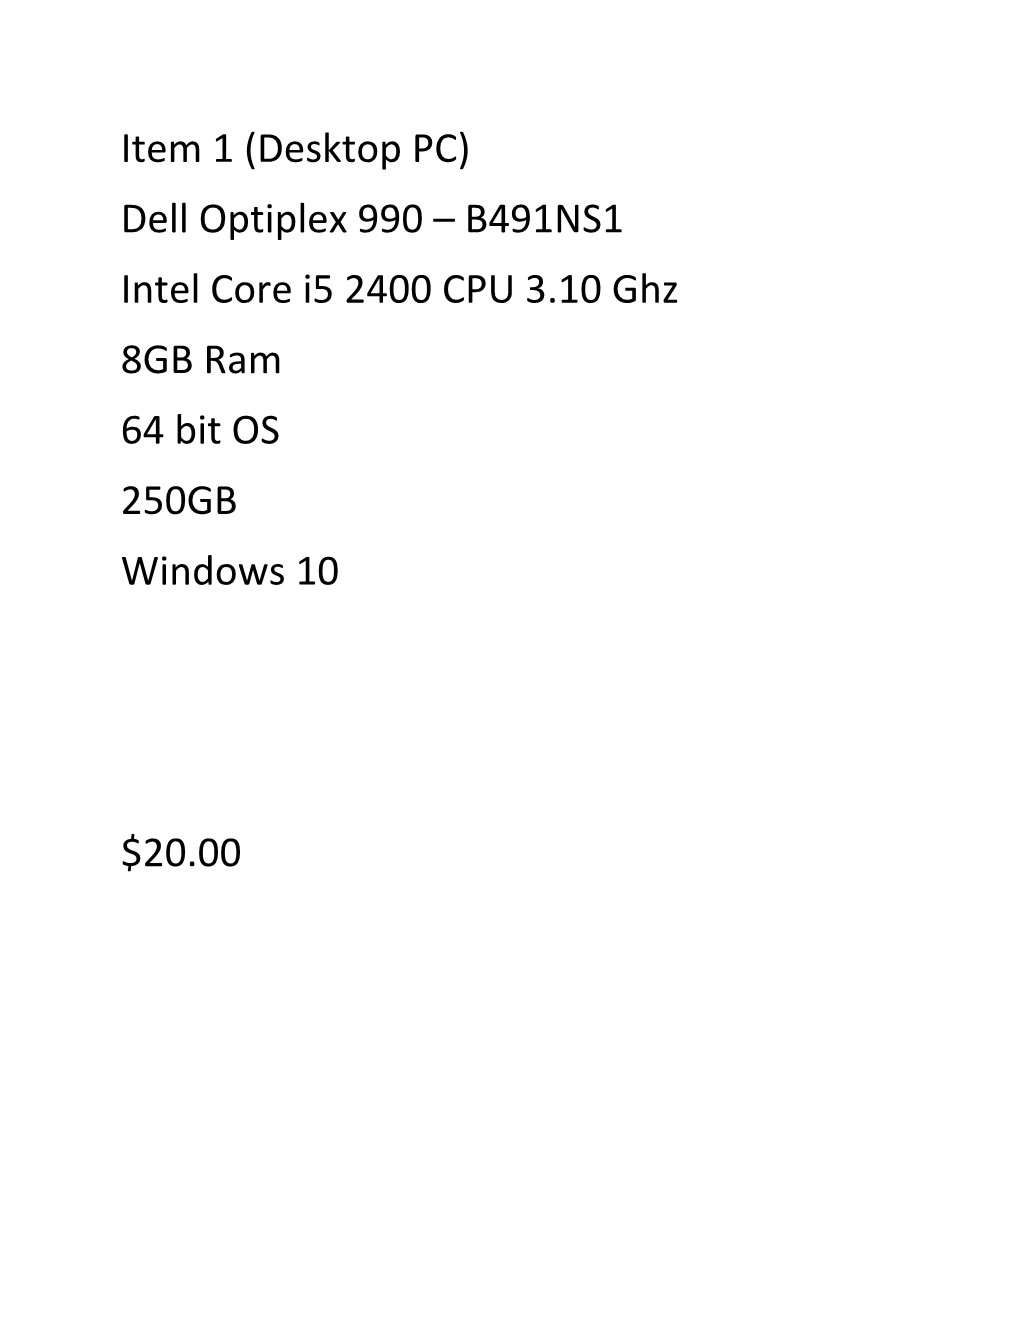 Item 1 (Desktop PC) Dell Optiplex 990 – B491NS1 Intel Core I5 2400 CPU 3.10 Ghz 8GB Ram 64 Bit OS 250GB Windows 10